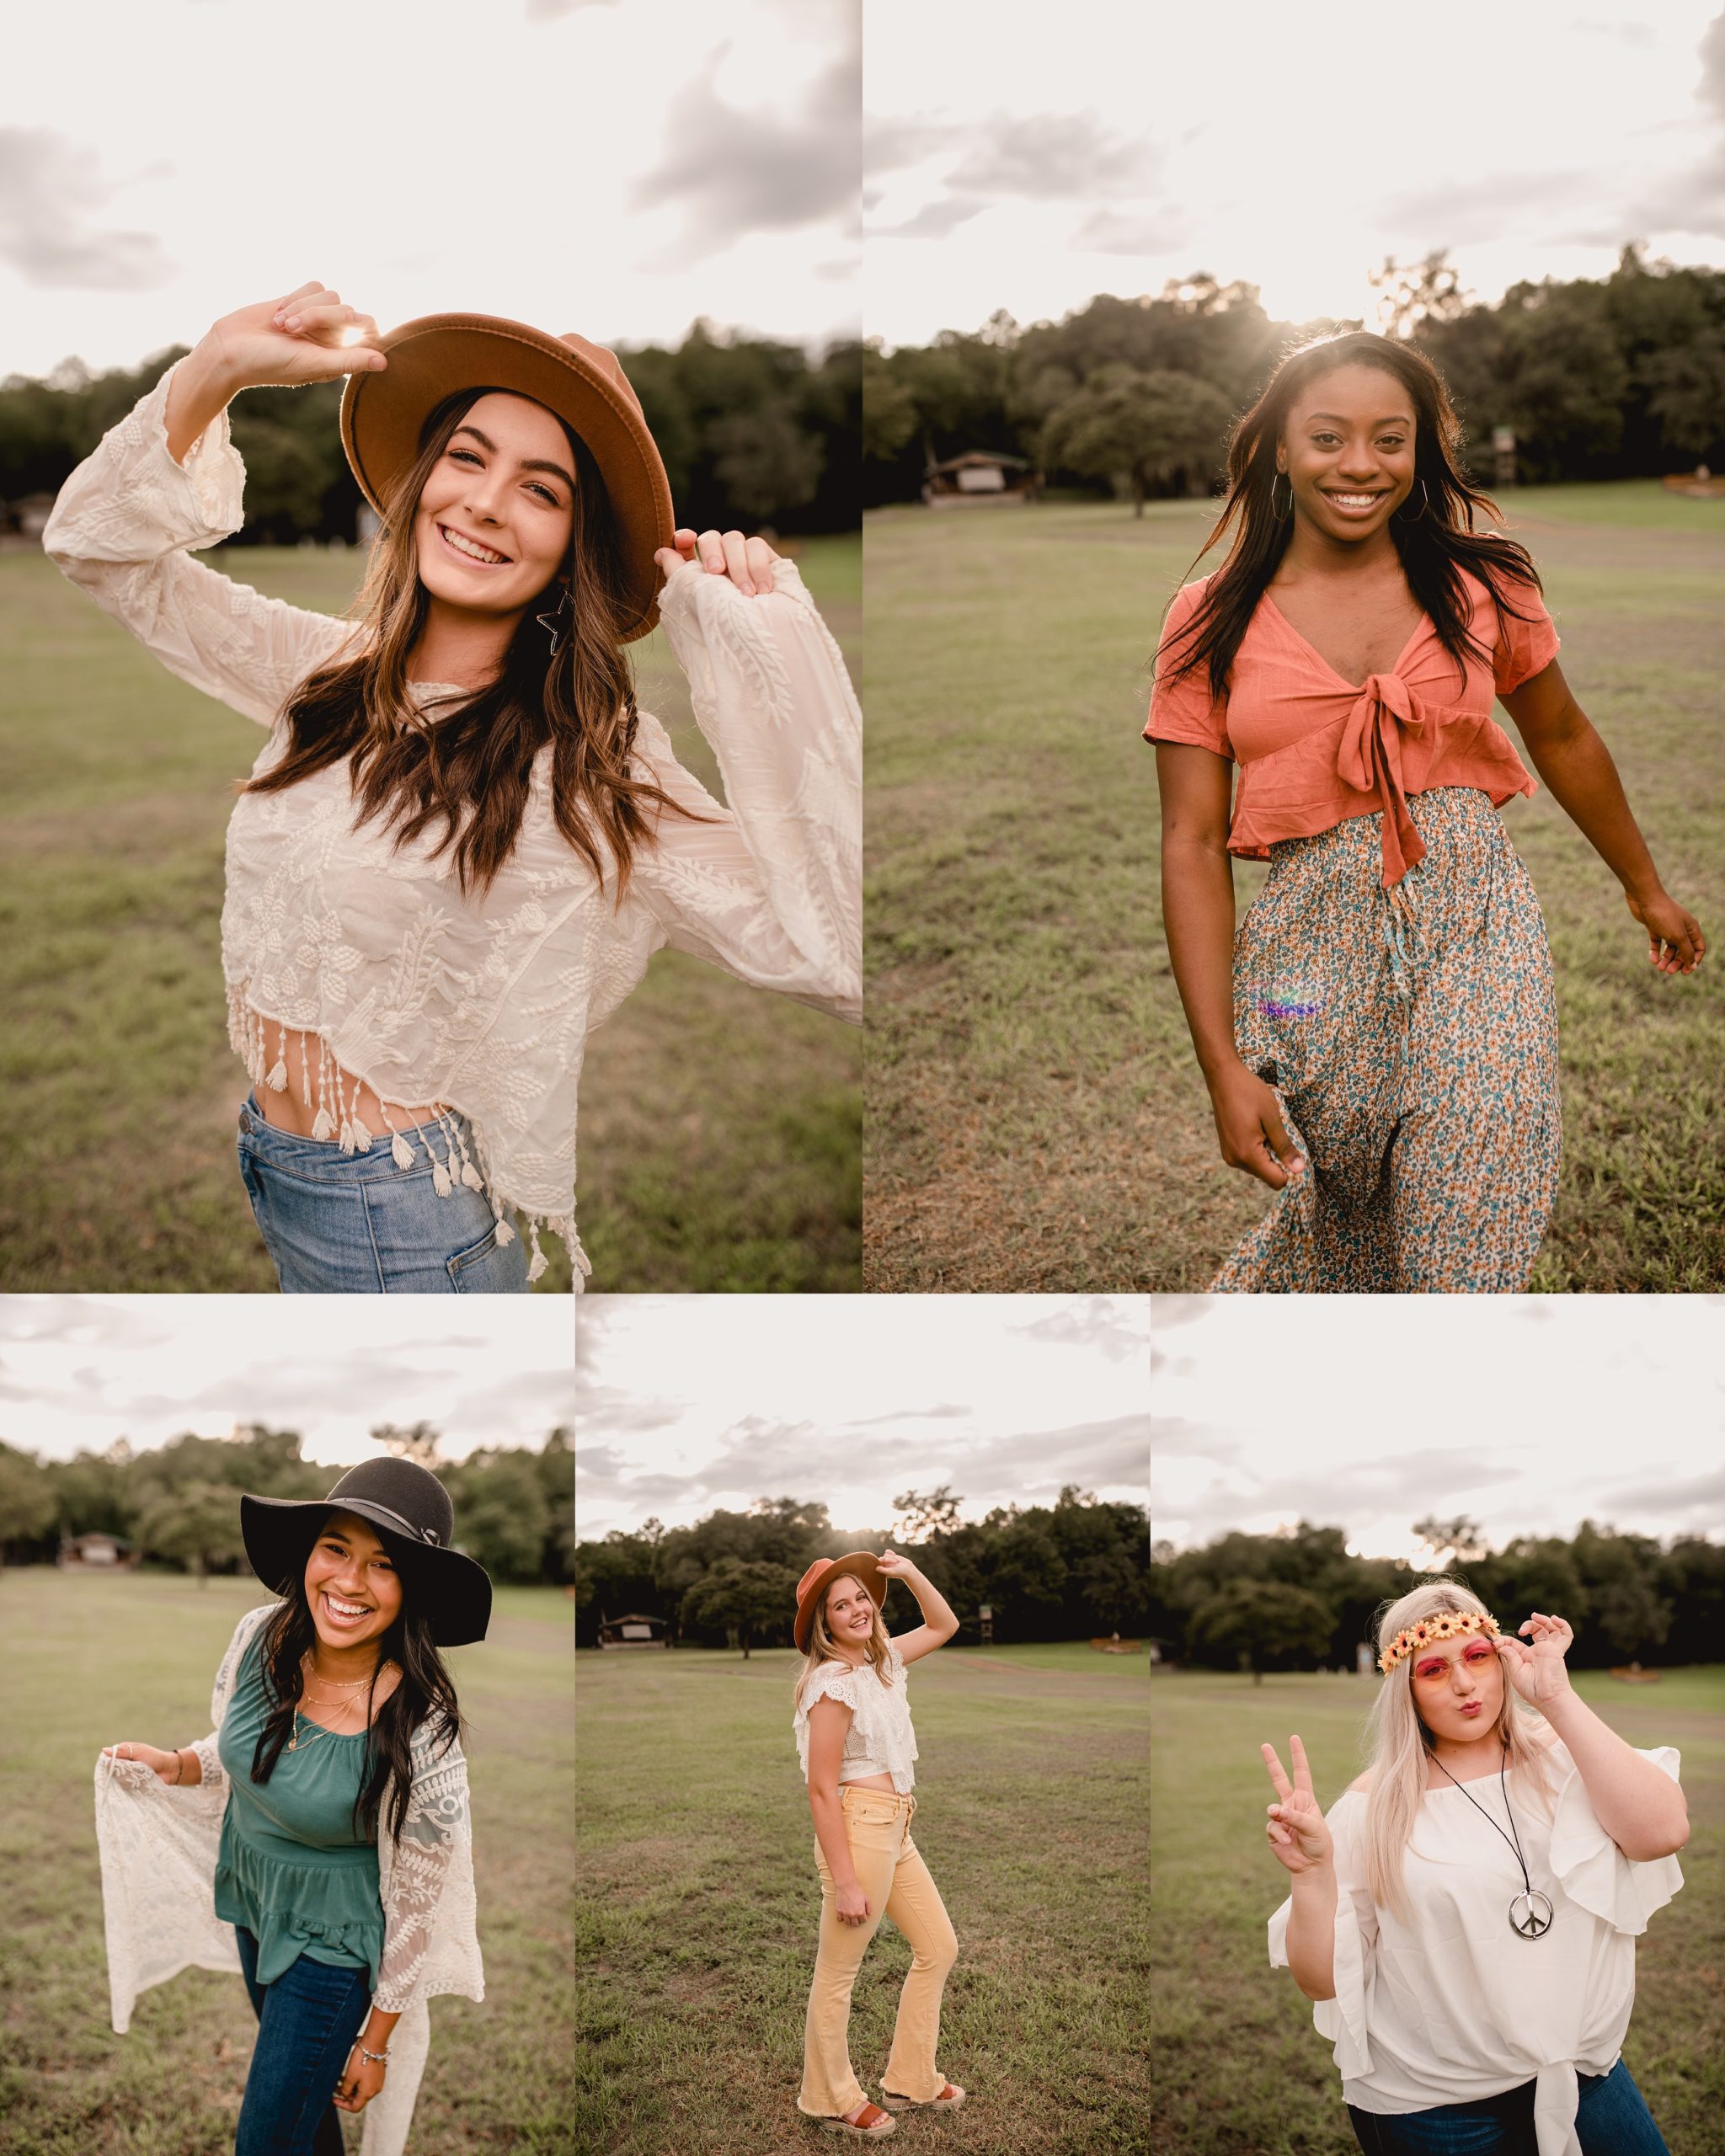 Hippie theme ideas for senior model team photoshoot